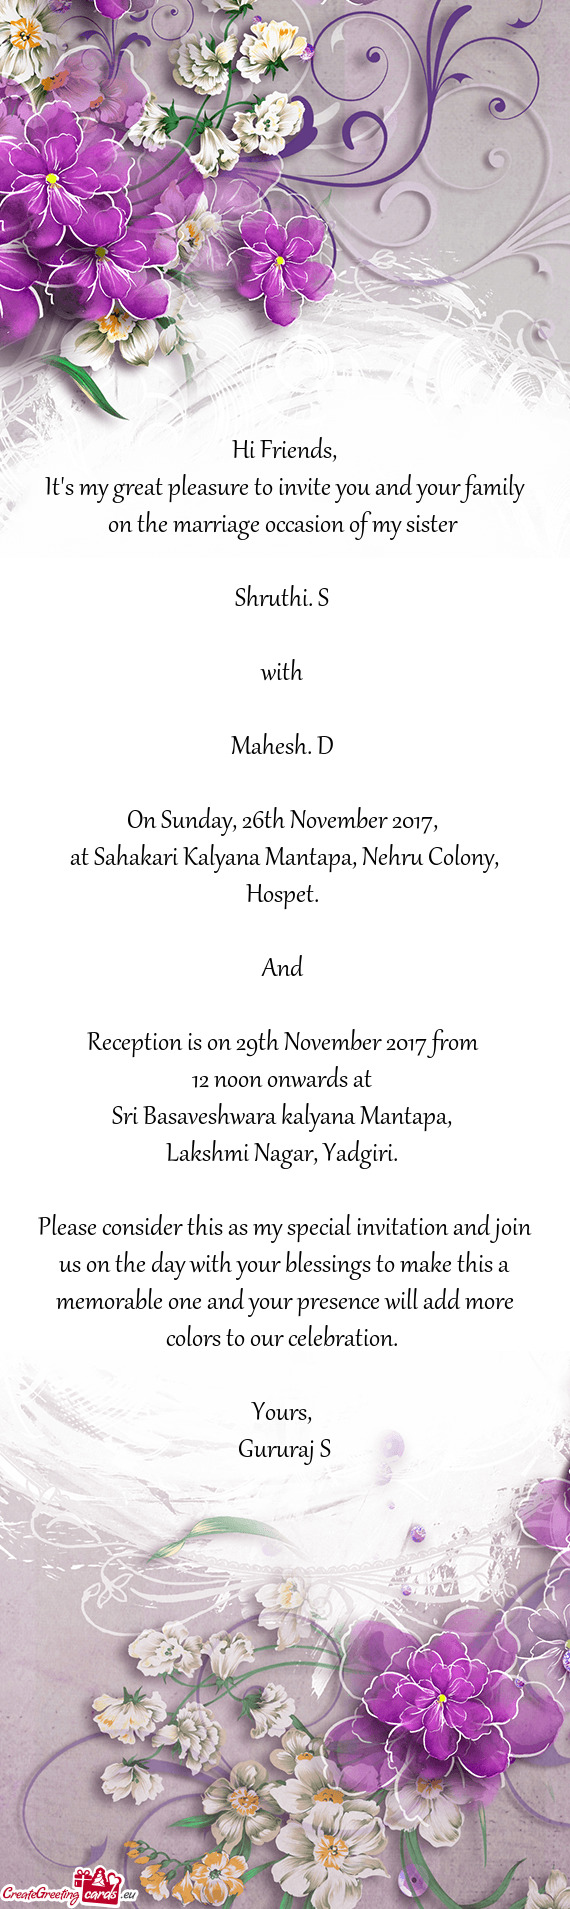 At Sahakari Kalyana Mantapa